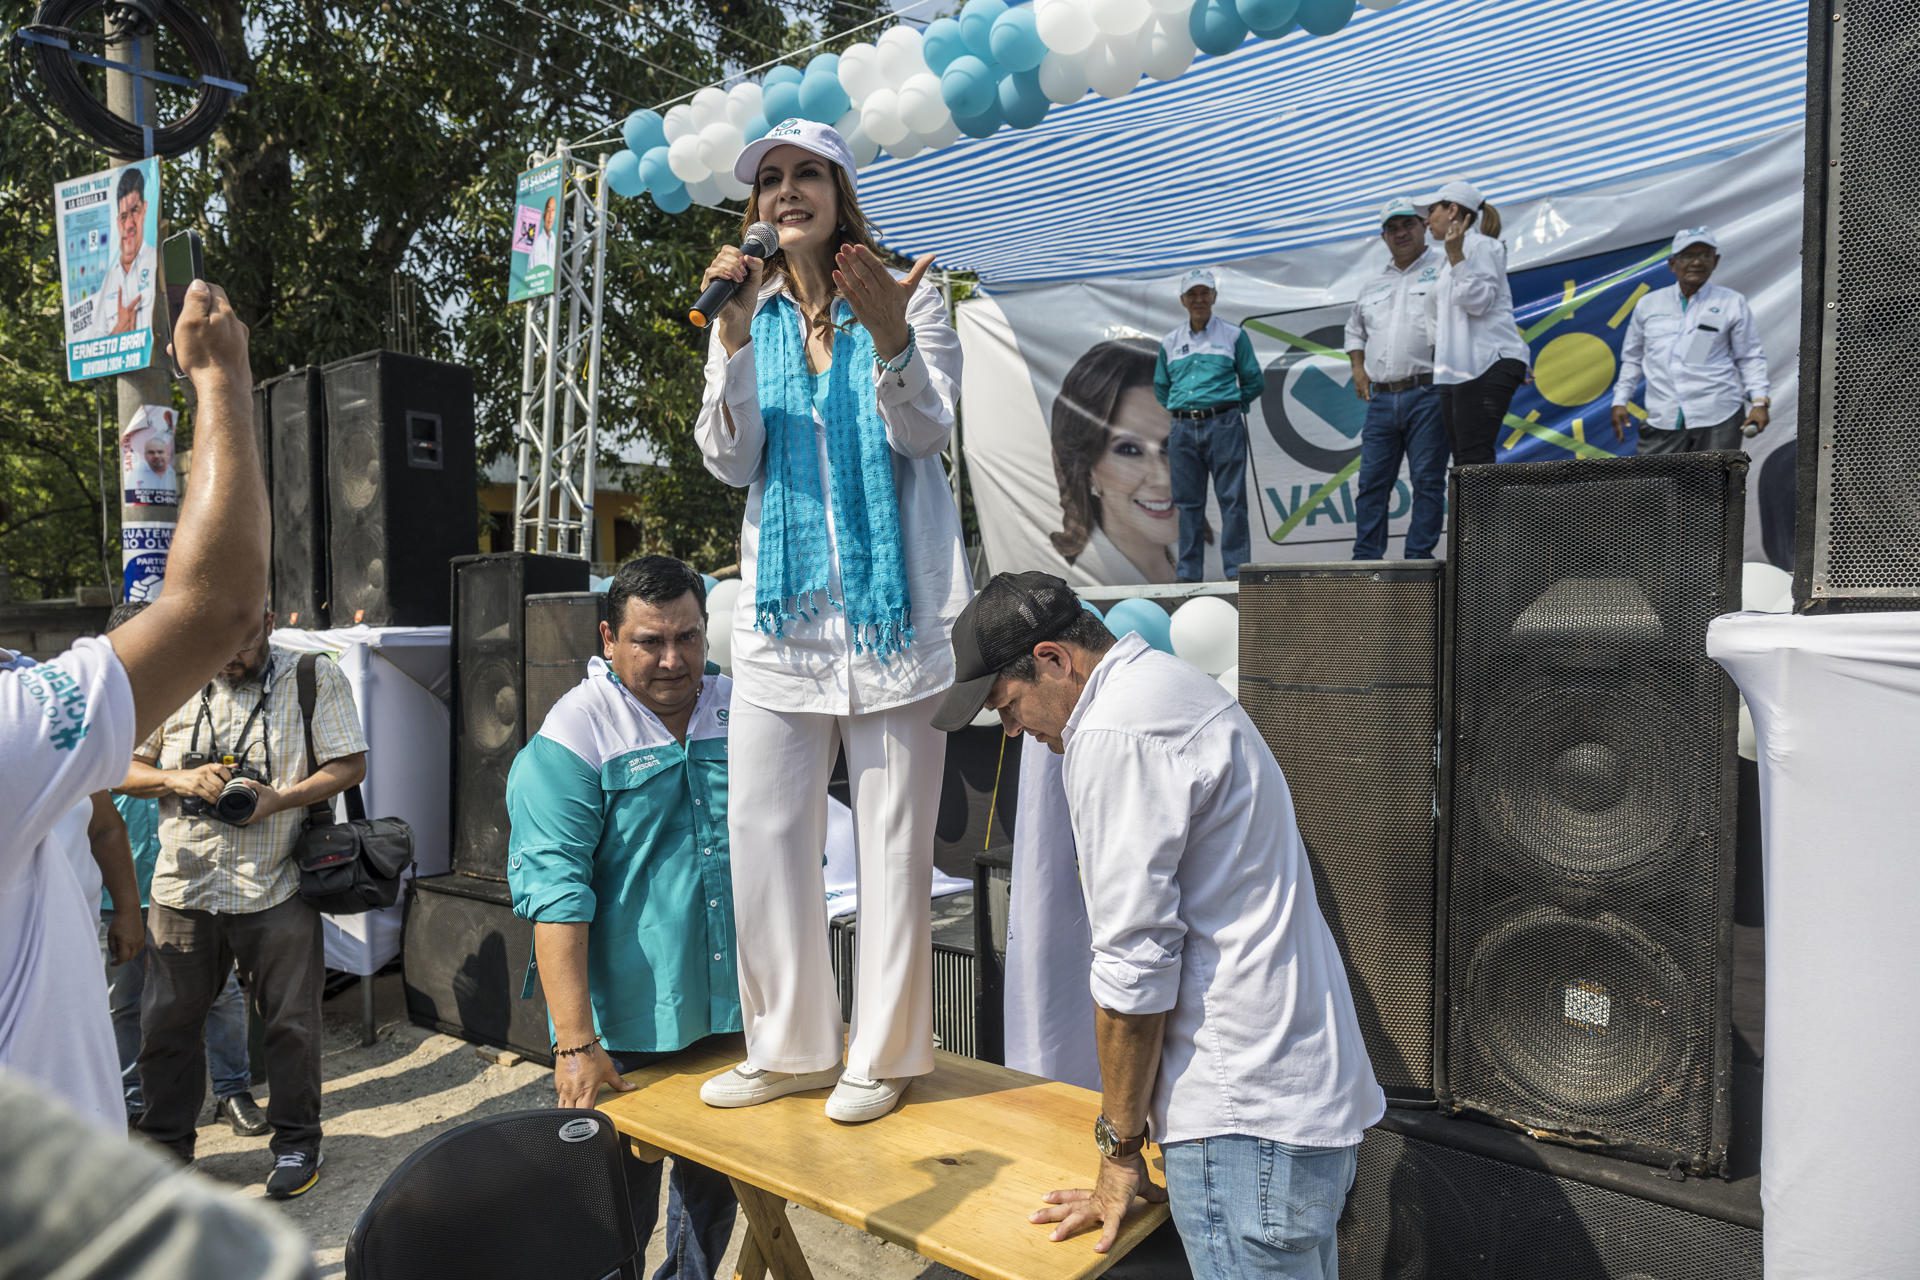 Restringen y persiguen sistemáticamente a candidatos opositores en Guatemala